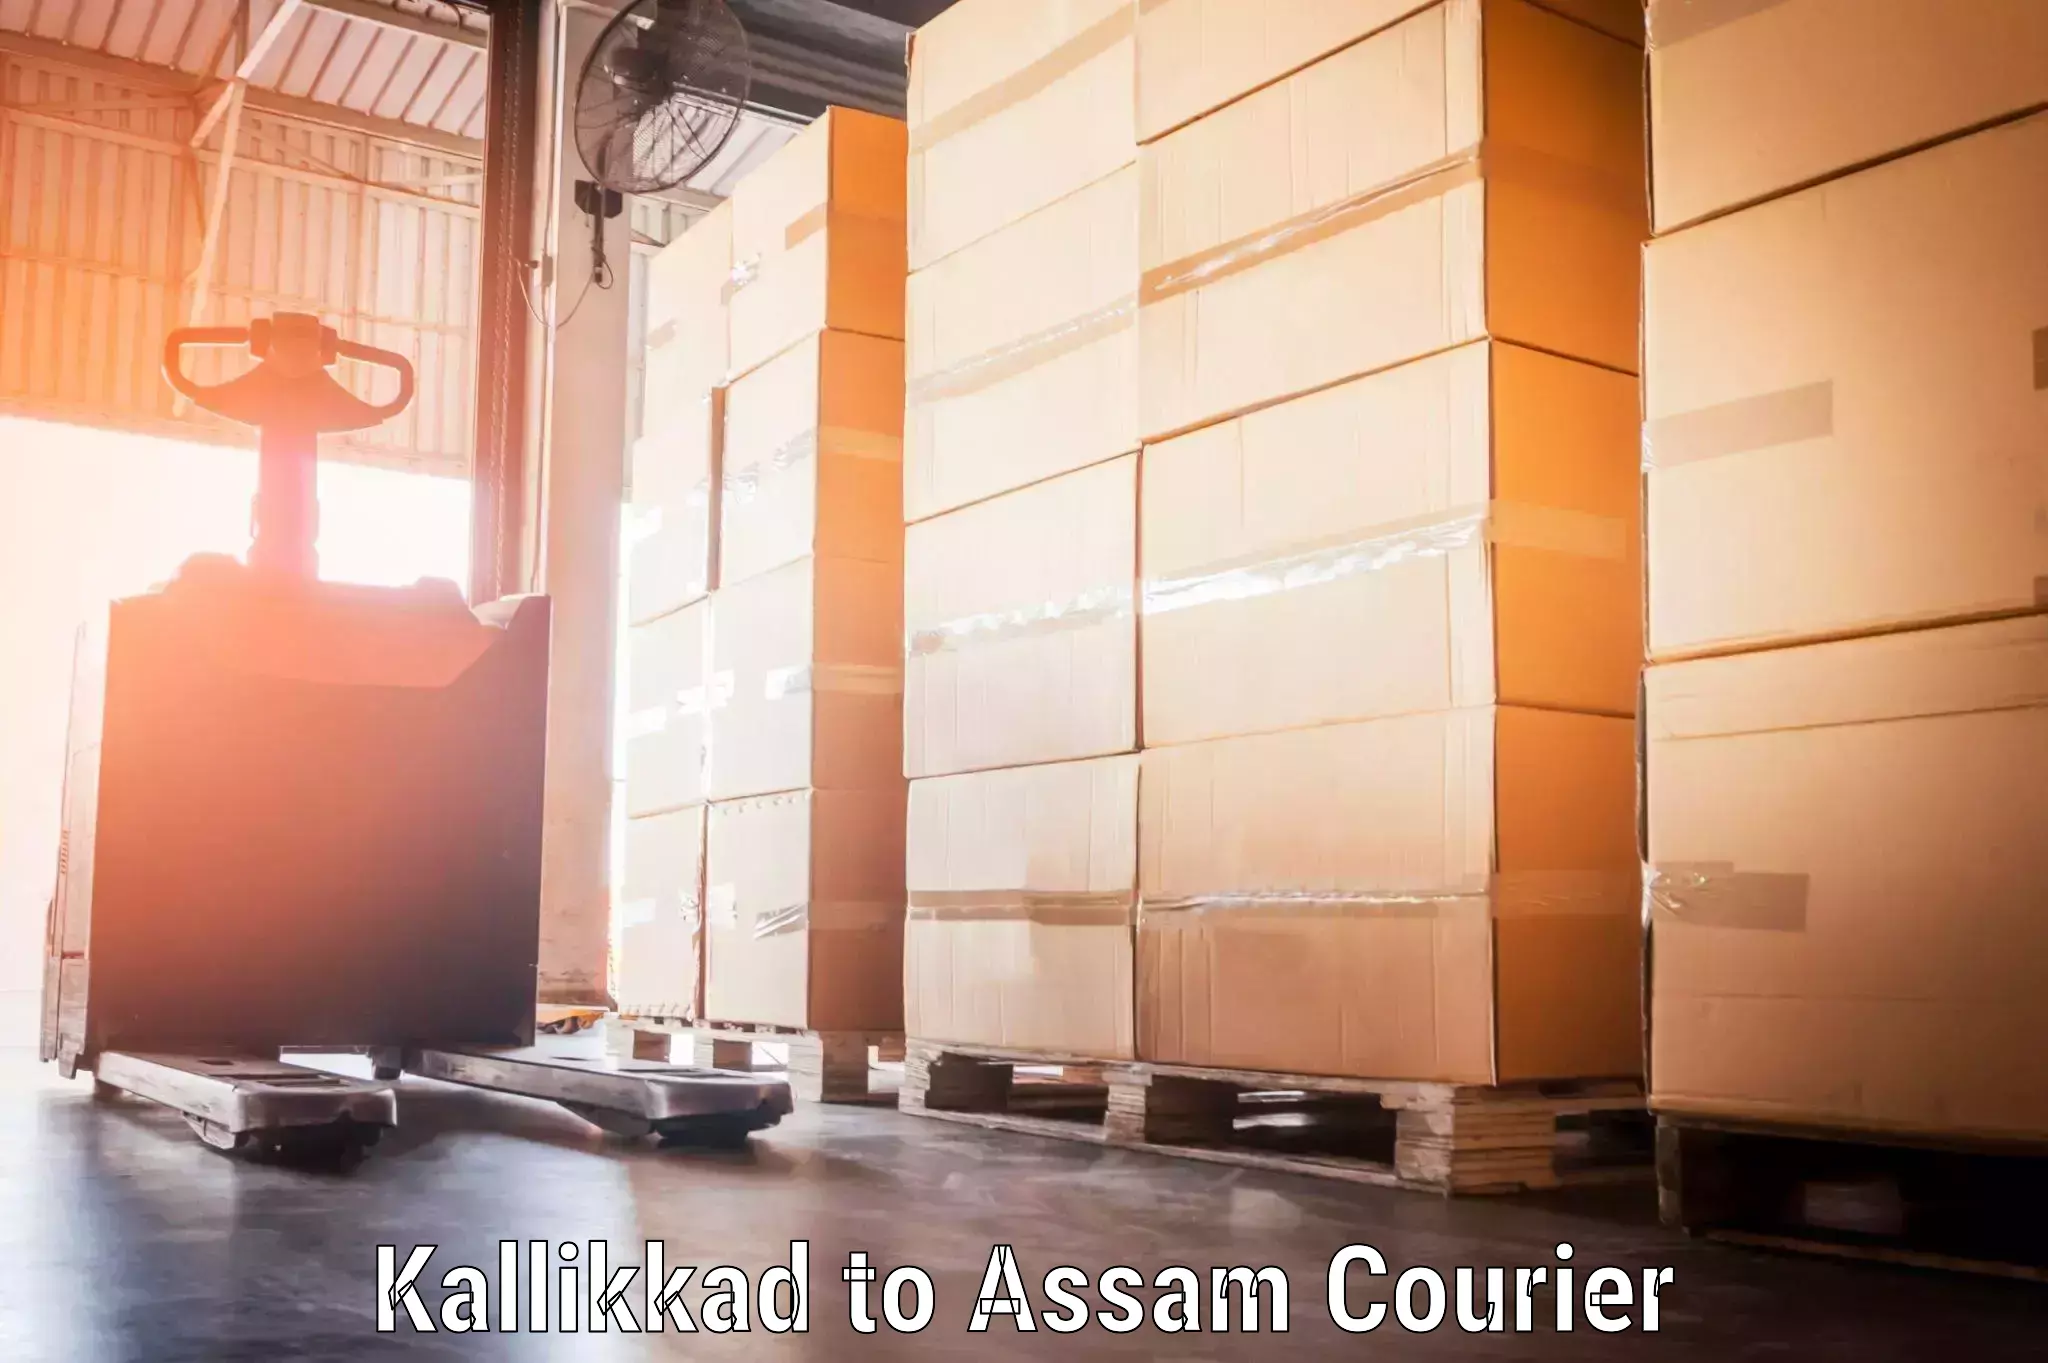 Instant baggage transport quote in Kallikkad to Kokrajhar